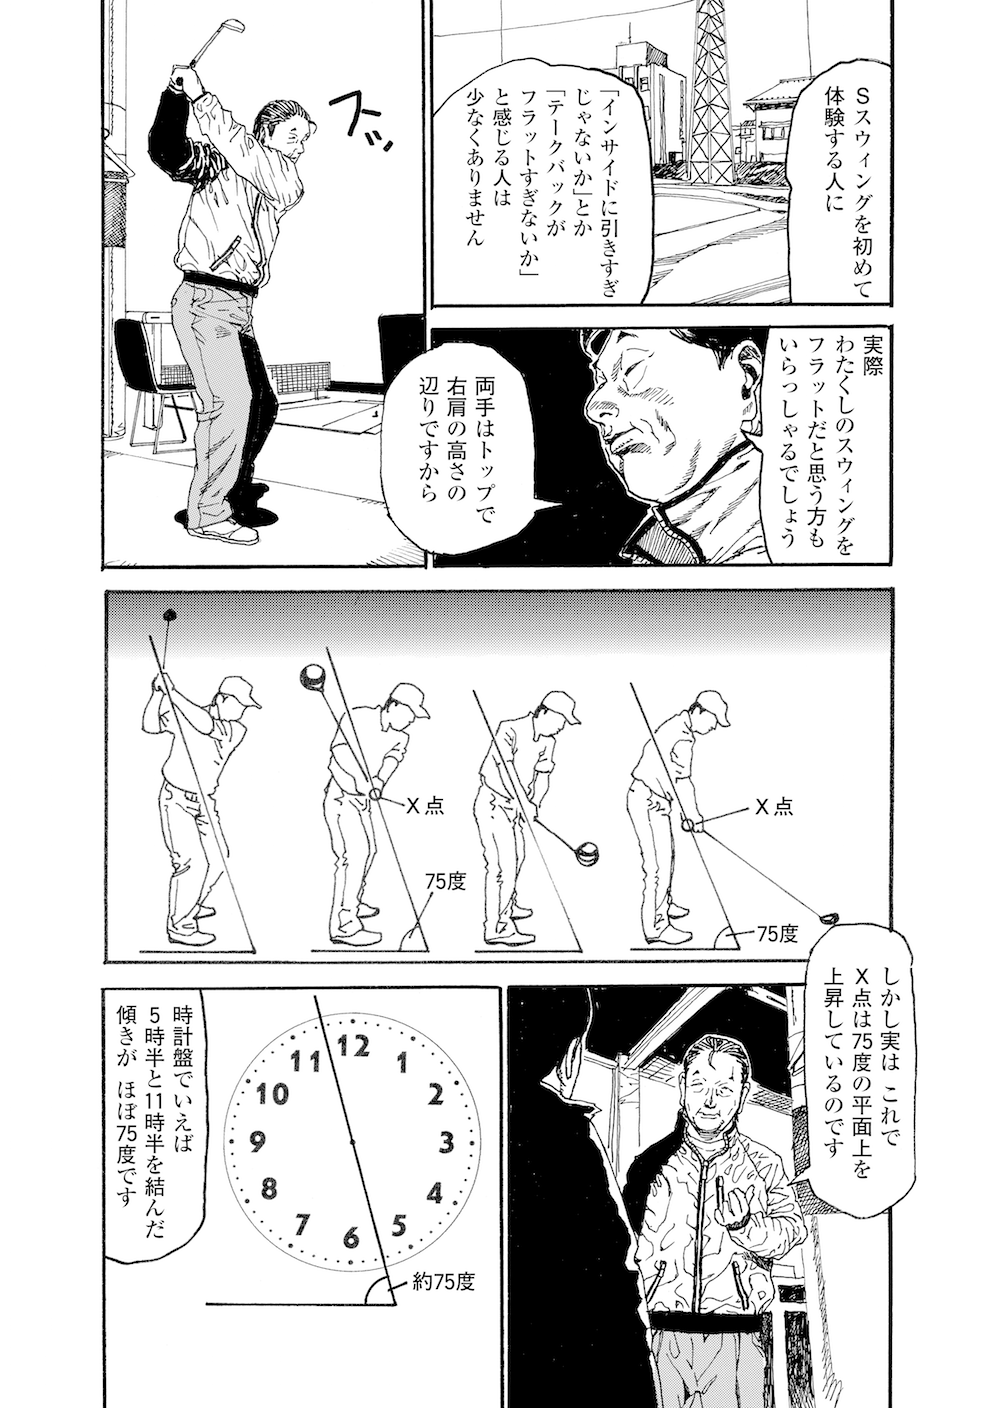 第9話 「トップの常識は大ウソ！」 - 無料で読めるゴルフレッスンコミックWEB | 日本文芸社